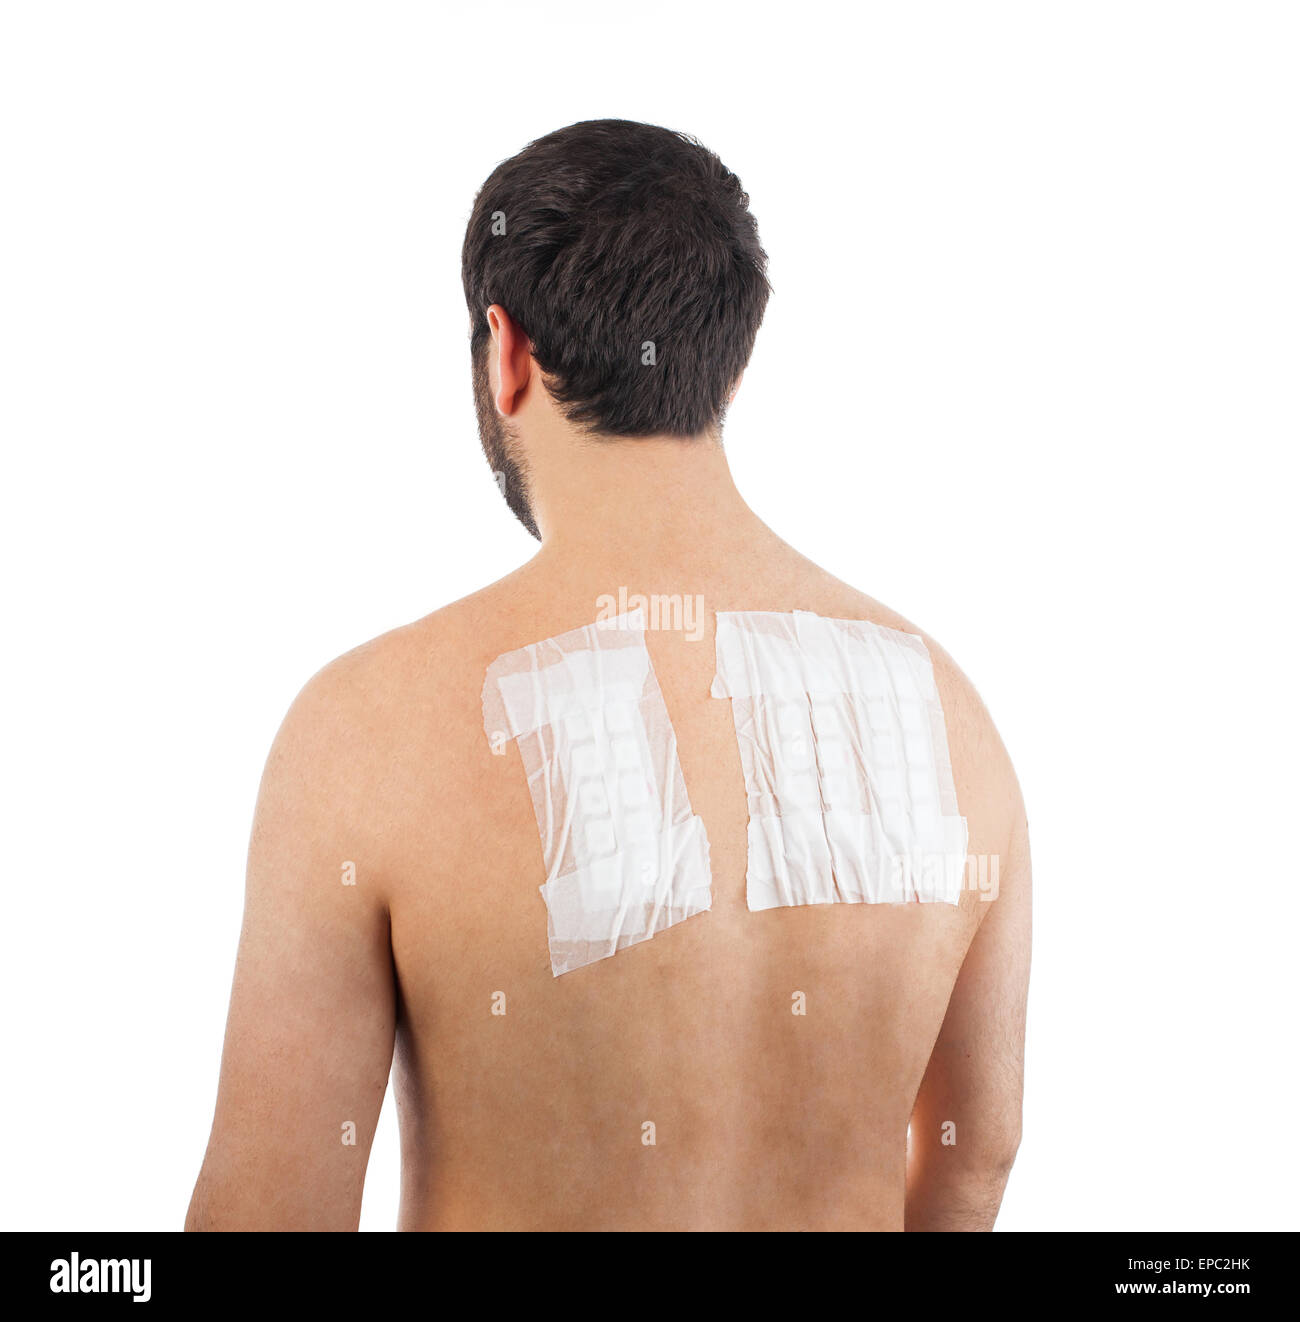 Haut Allergie Epikutantest auf Rückseite des männlichen Patienten auf weißem Hintergrund Stockfoto